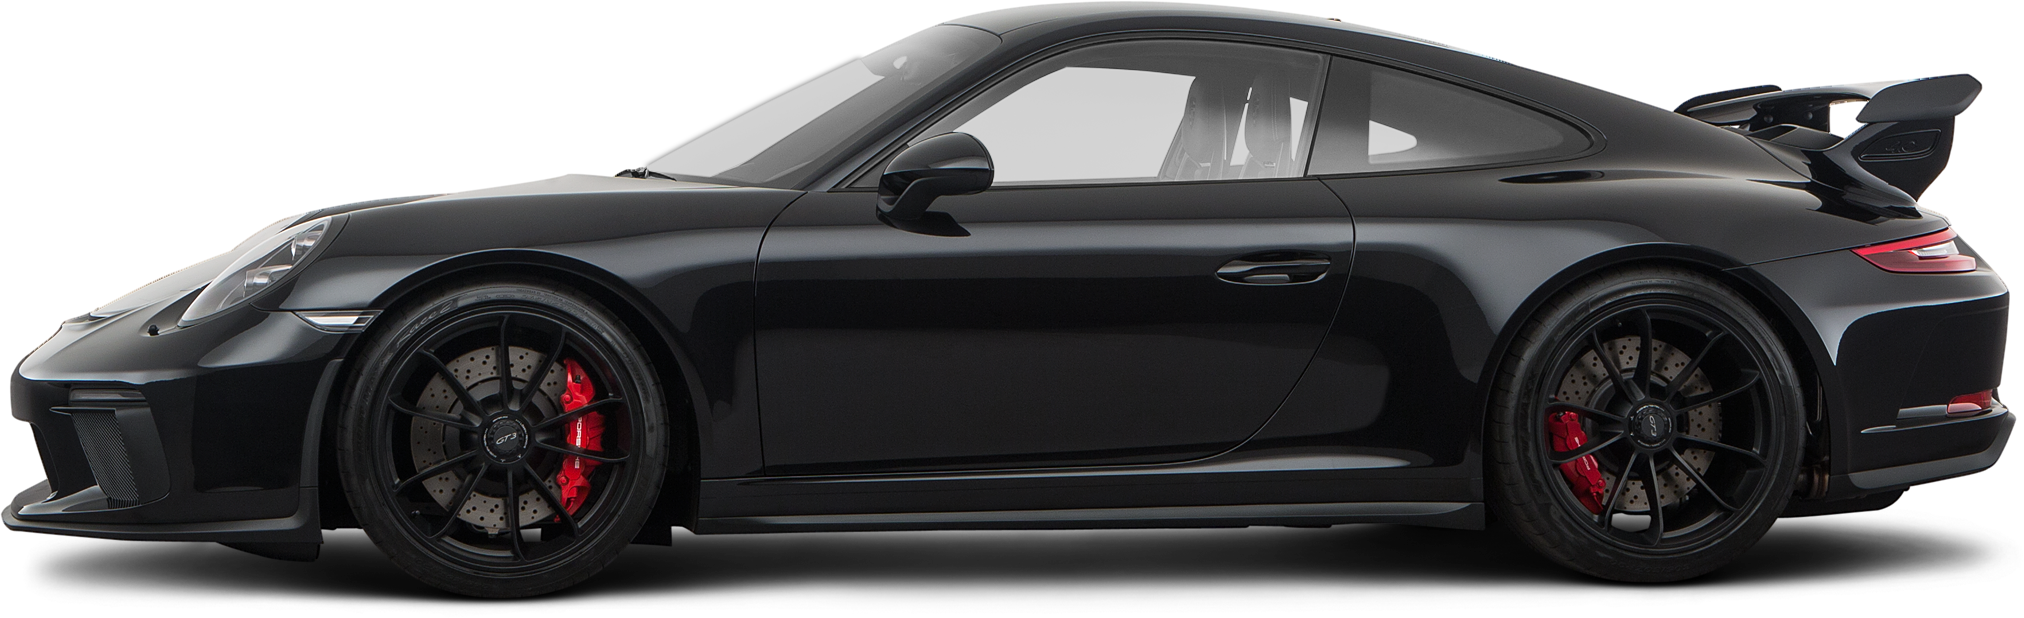 Gt3 2018 Porsche 911 Coupe Gt3 - Porsche 911 2018 Black (2024x618), Png Download